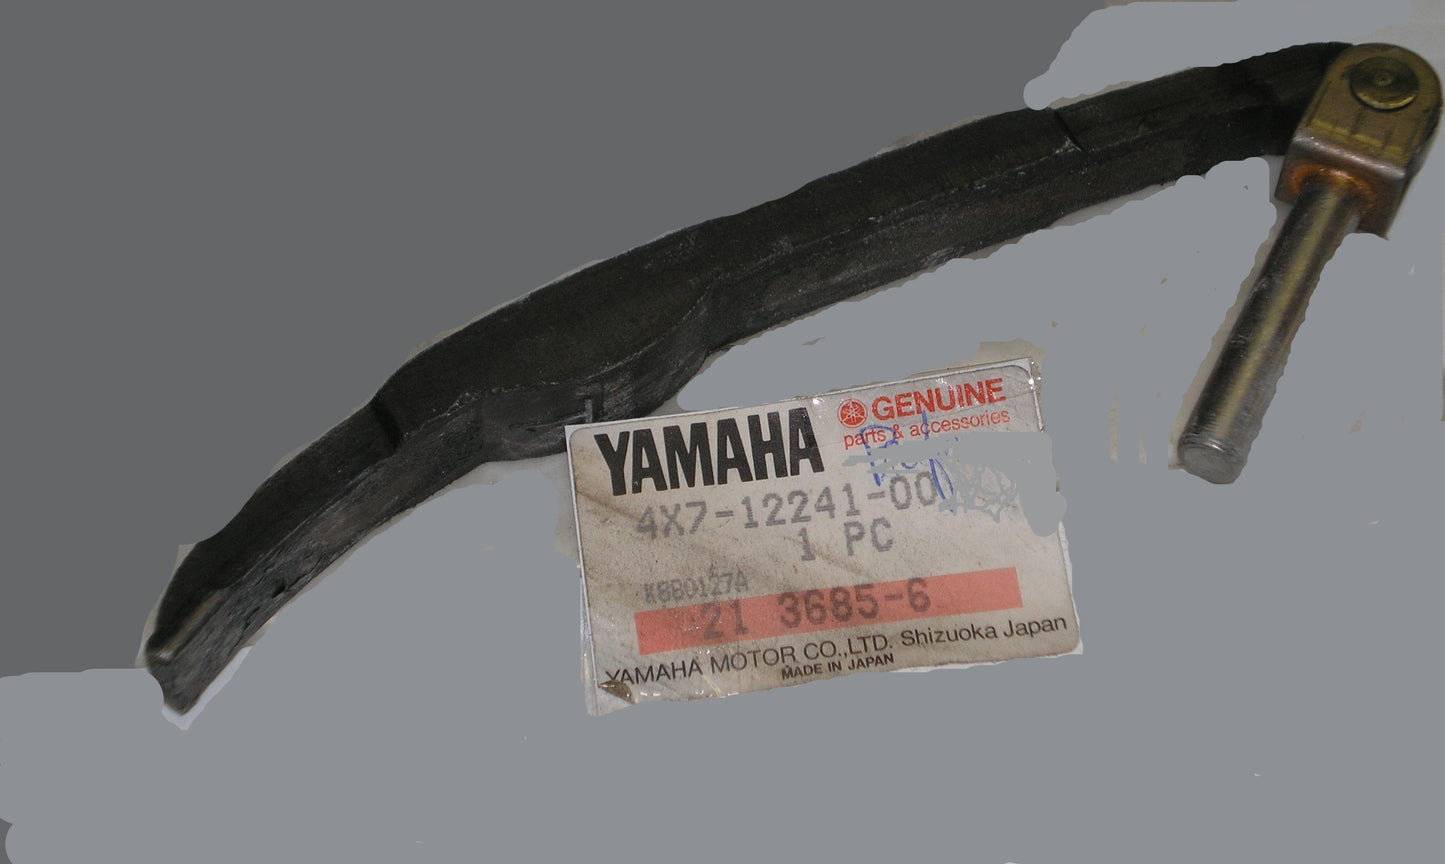 YAMAHA XV700 XV750 XV920 XV1000 XV1100  Cam Chain Tensioner Guide #2  4X7-12241-00 / 4X7-12221-00